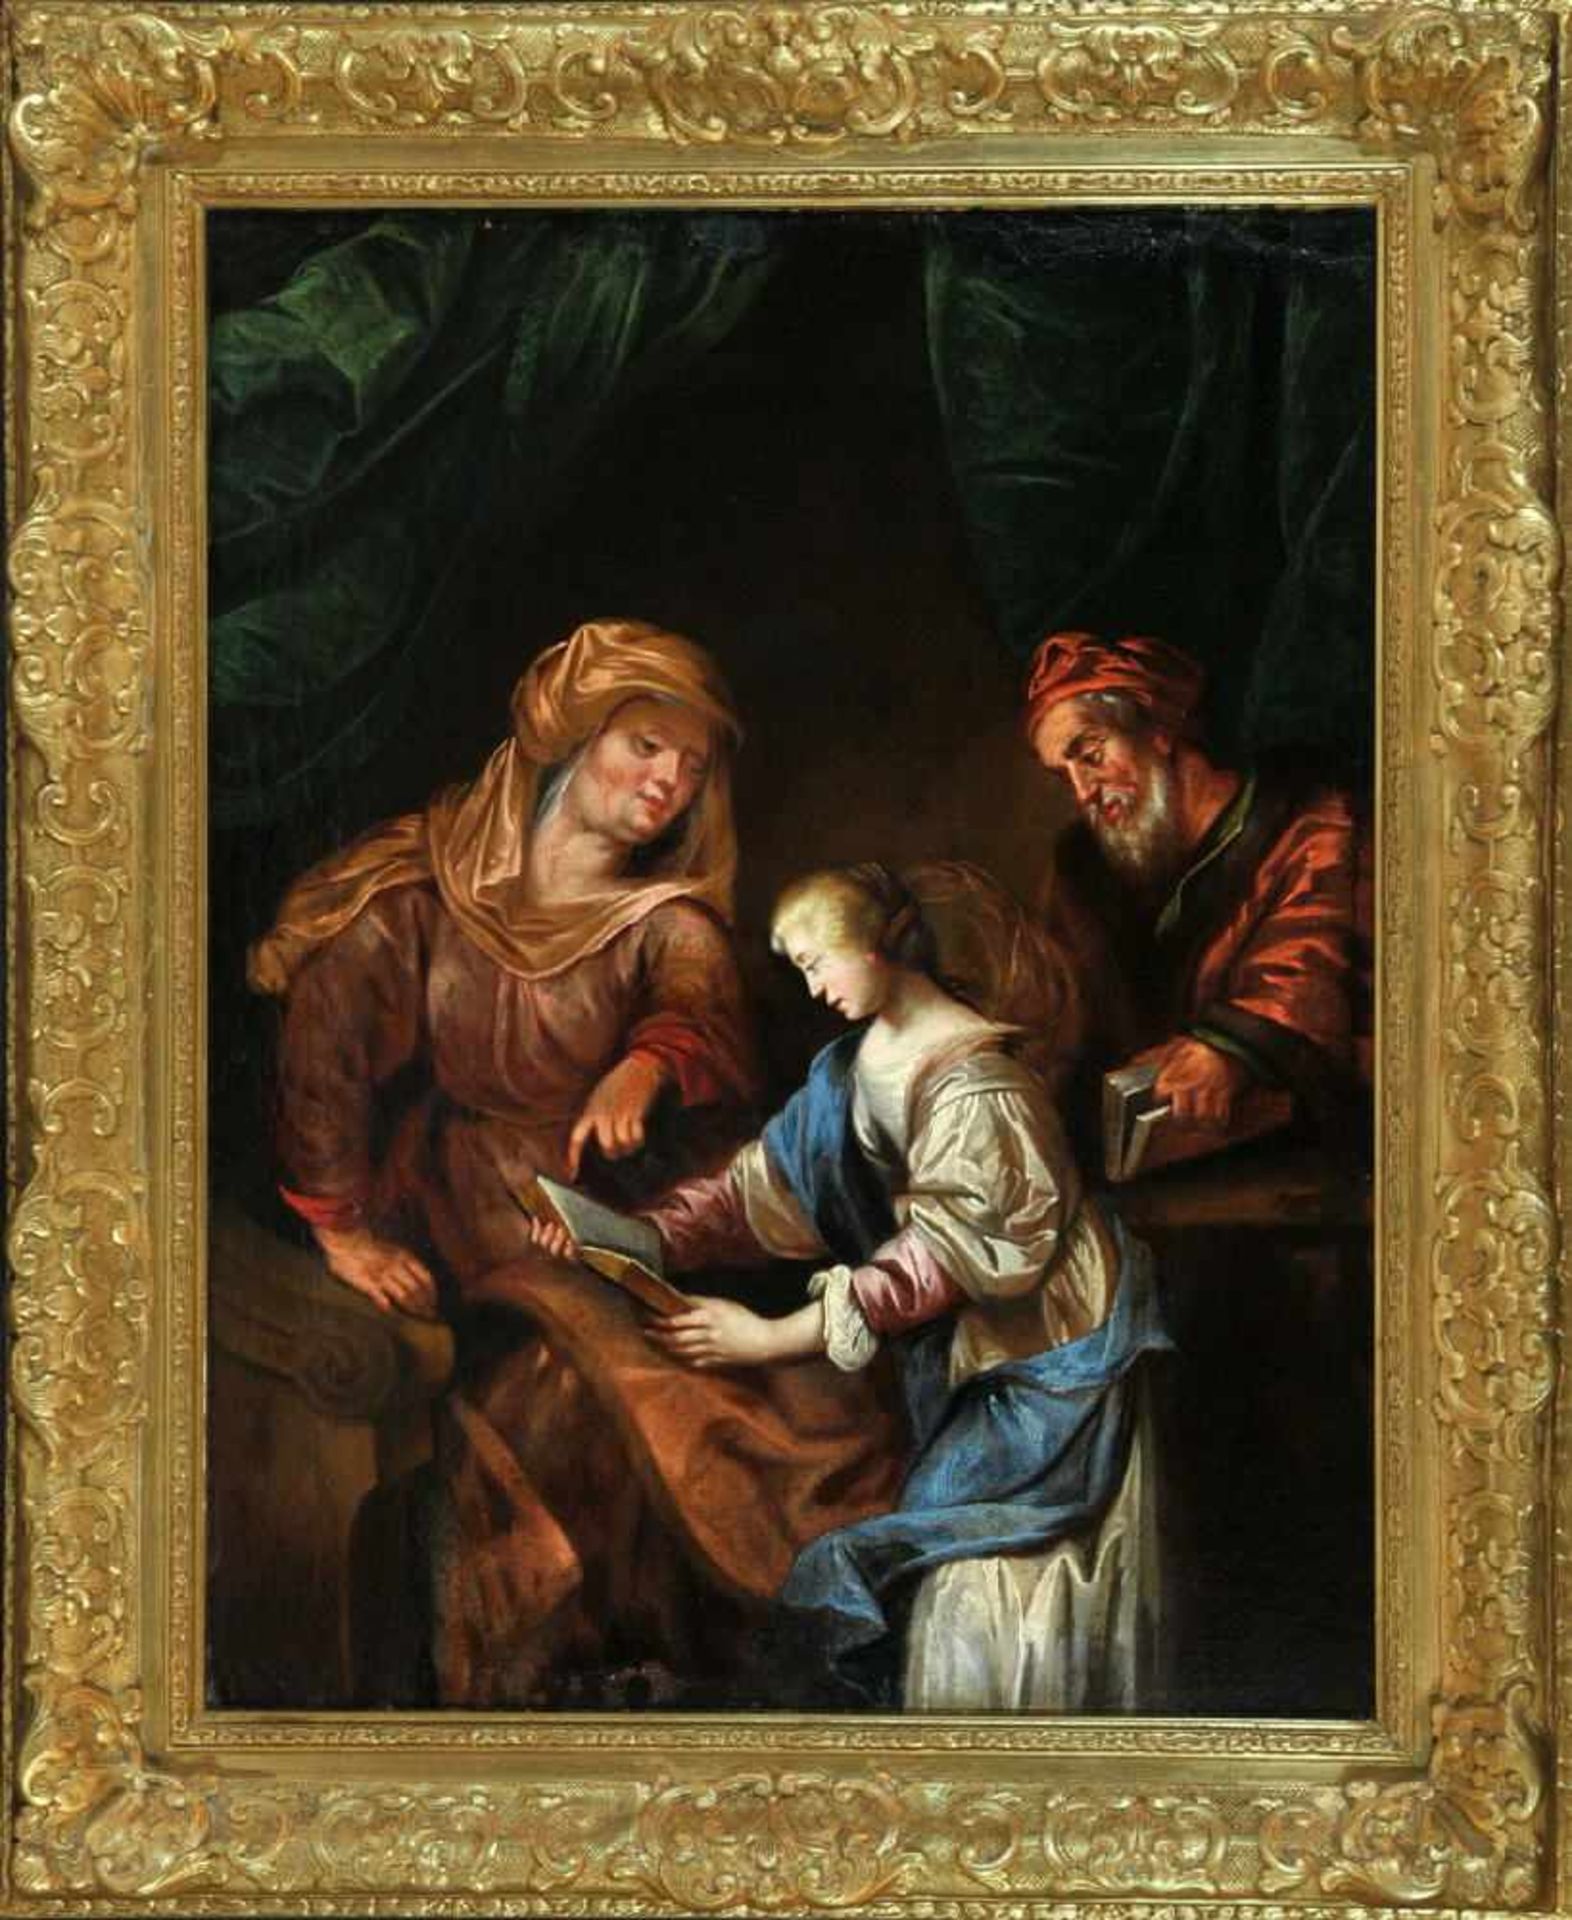 Bildnismaler des 17./18. Jh.Öl/Lwd, doubl., 56 x 44,5 cm, " Anna, Maria lesen lehrend ", Retuschen